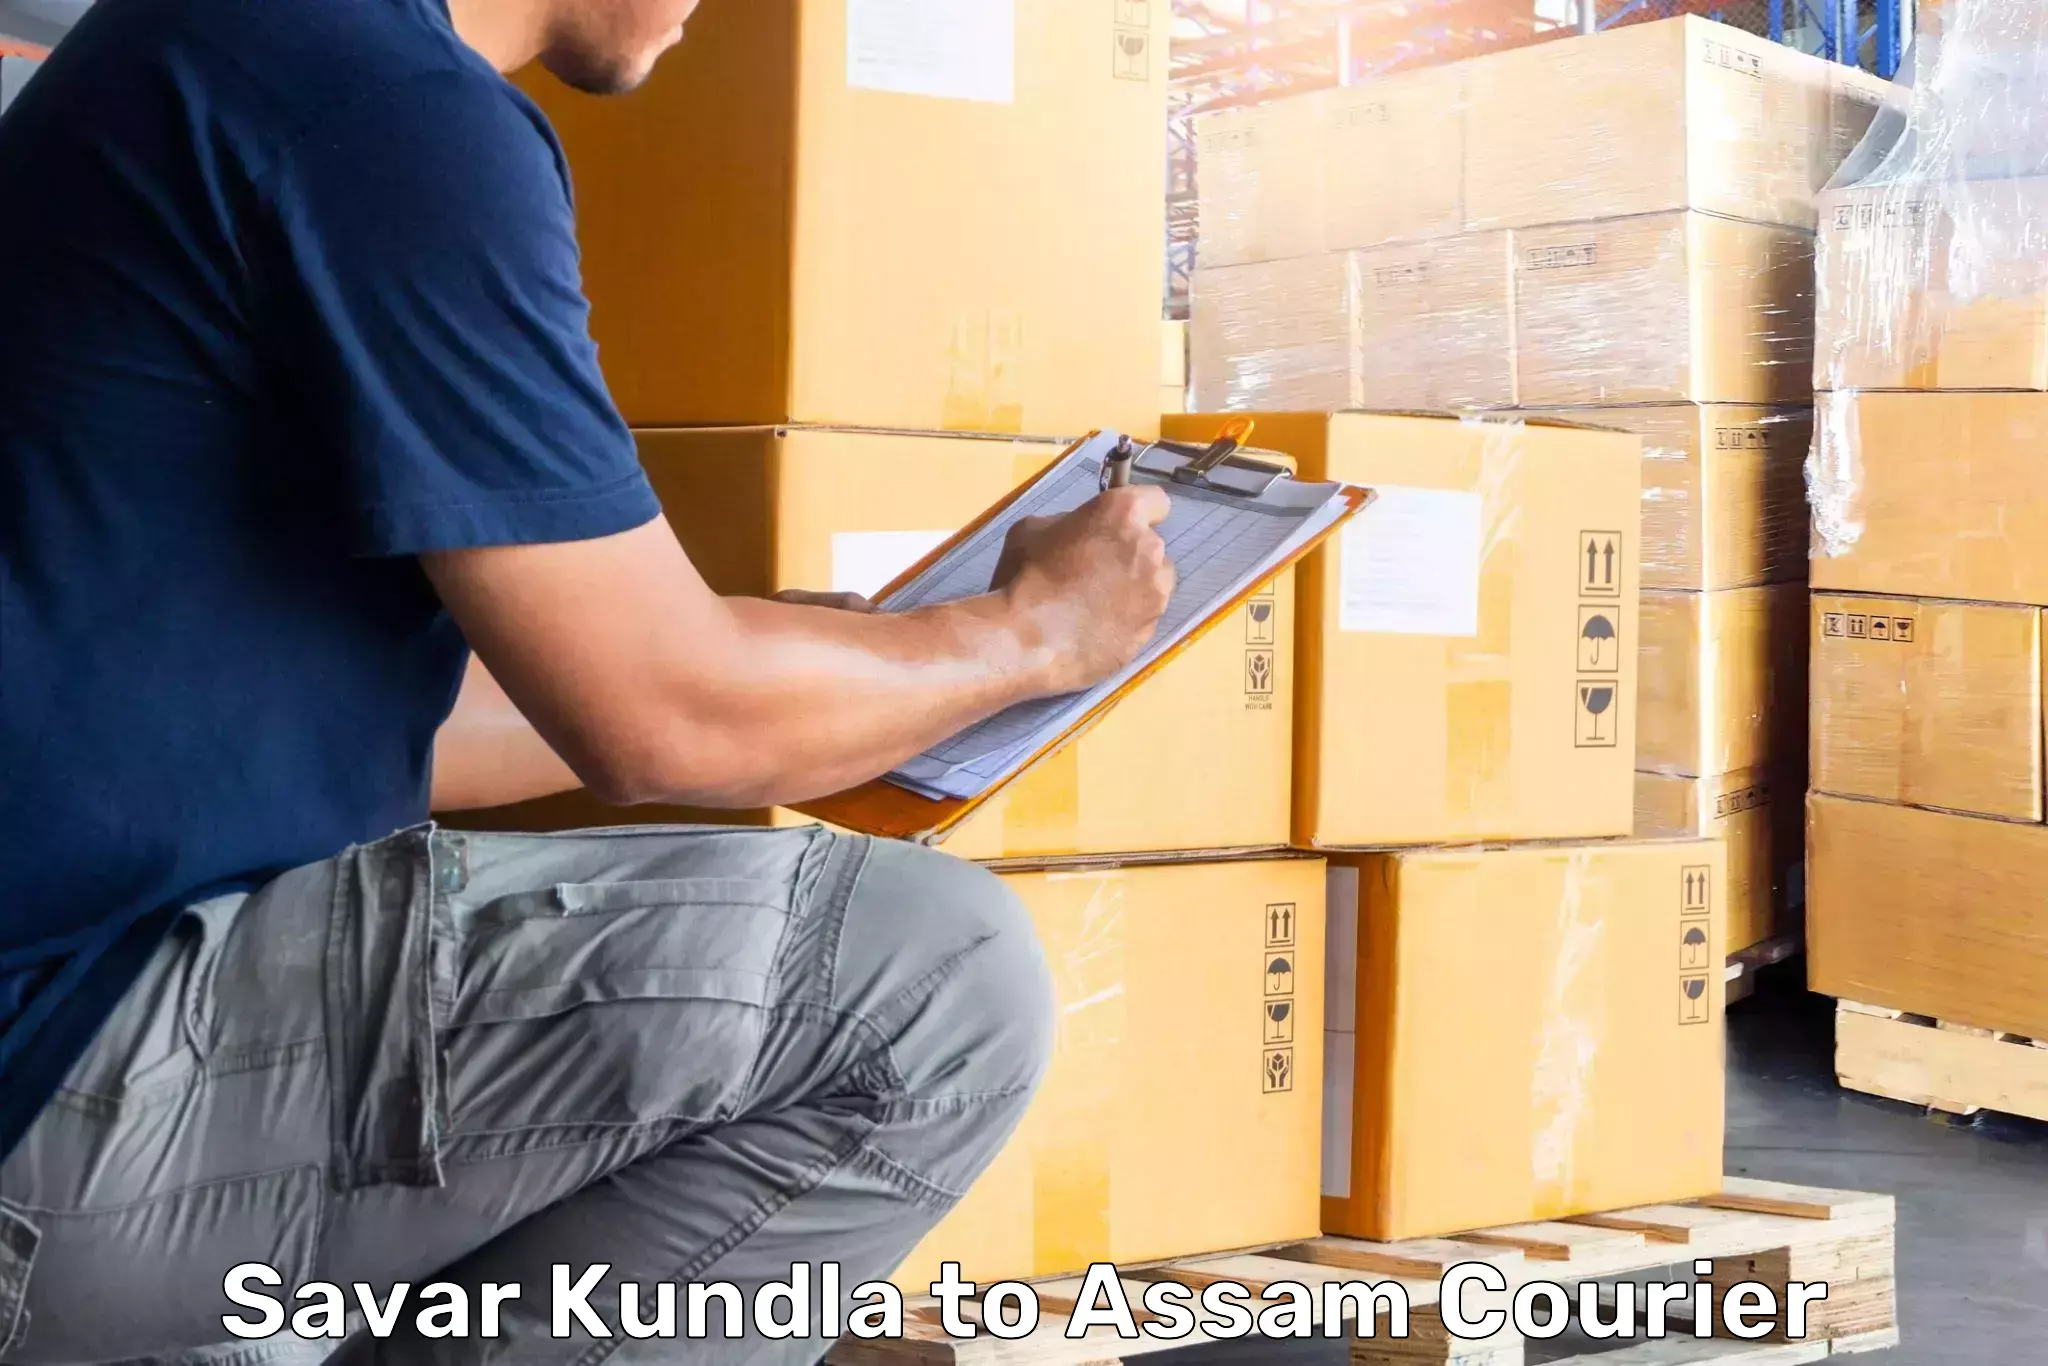 Luggage transfer service Savar Kundla to Hojai Lanka